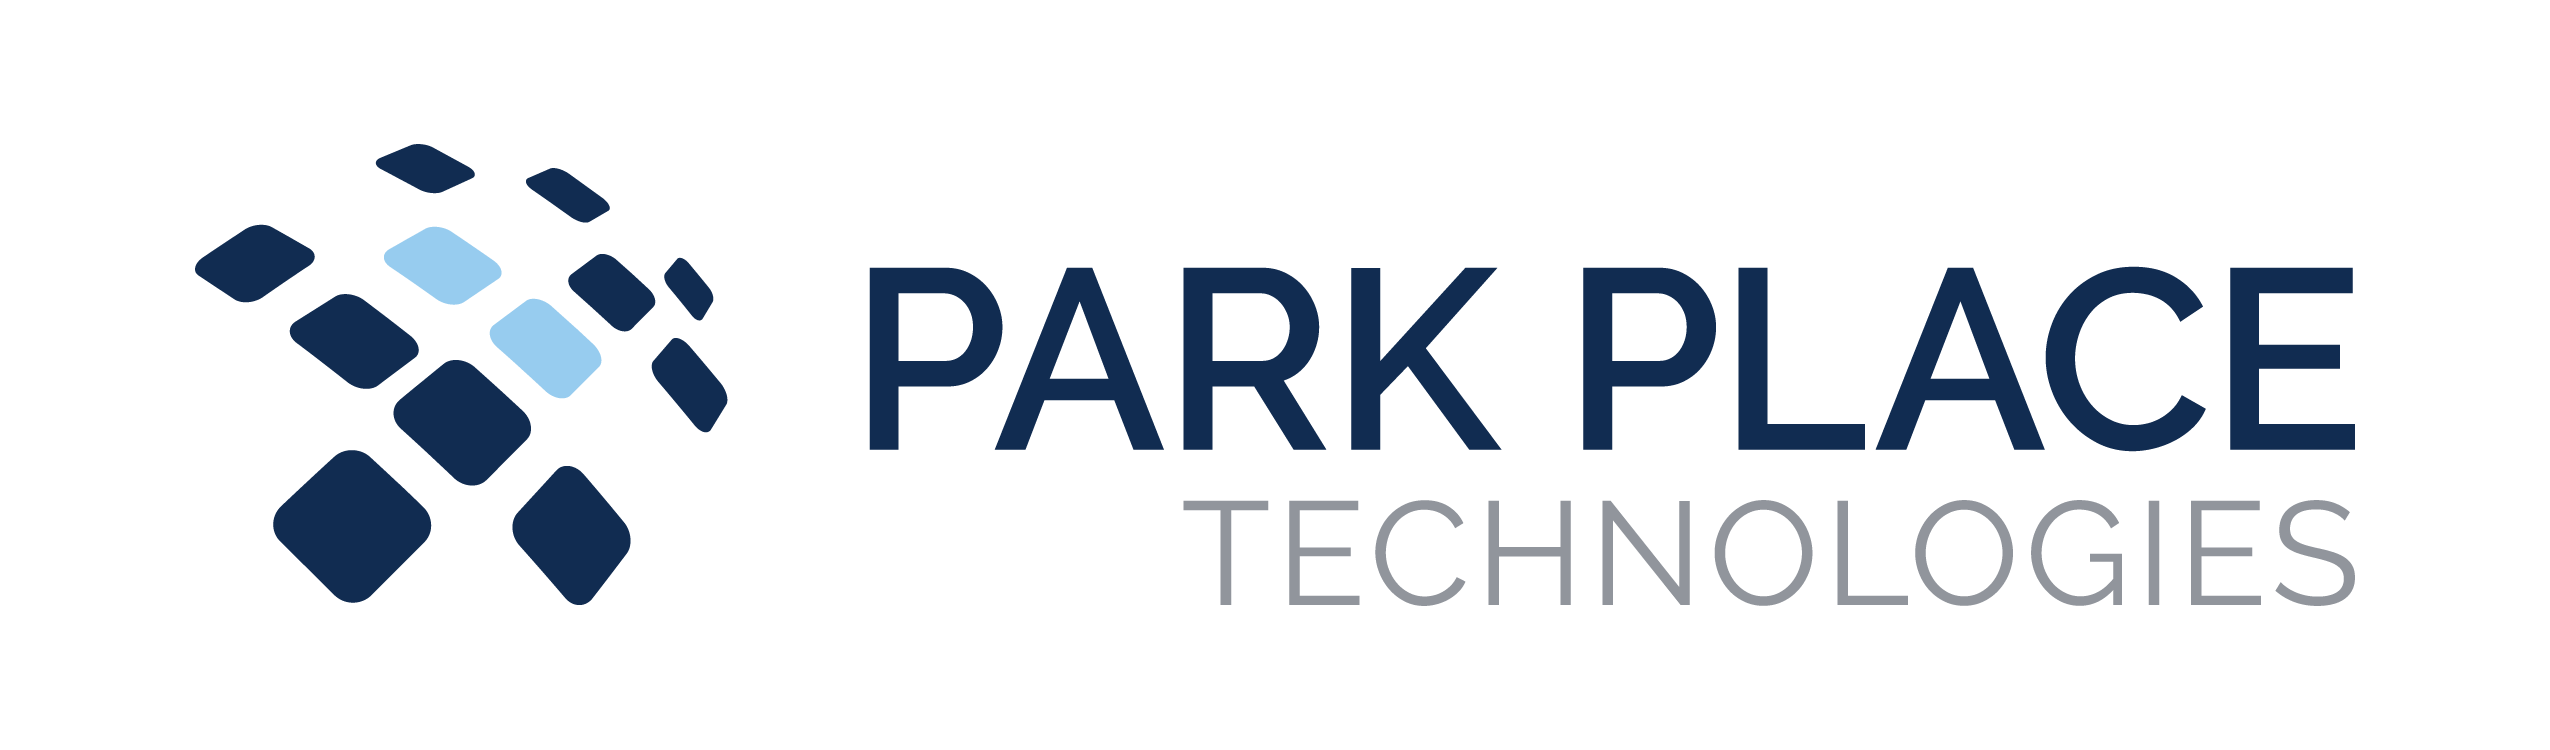 Park Place Technologies, LLC